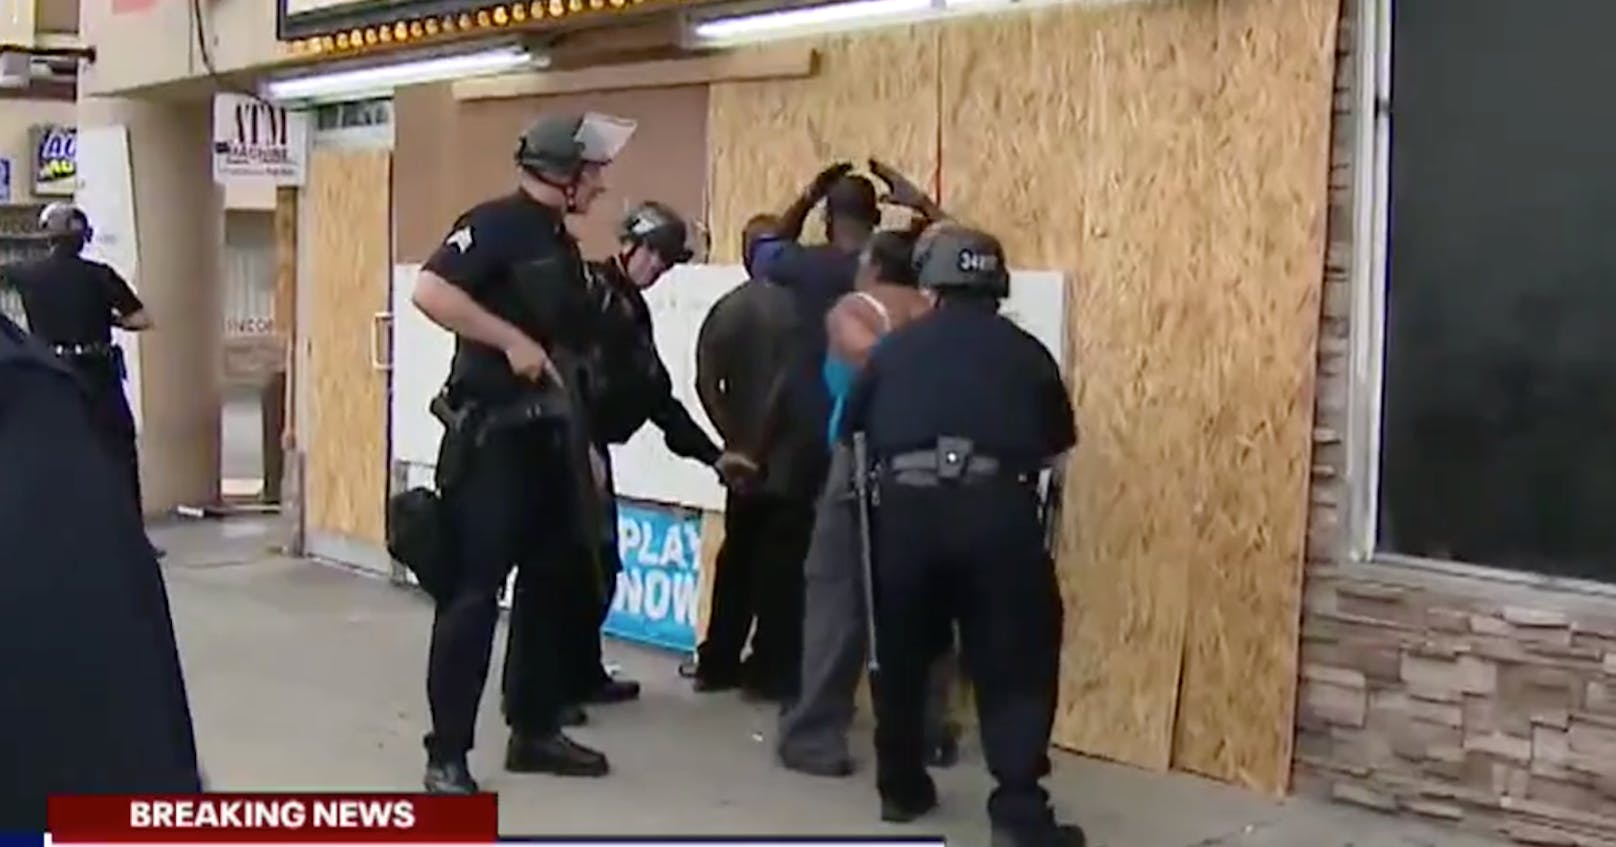 Die herbeigerufene Polizei legt den Beschützern des Ladens Handschellen an, während die Plünderer davonrennen.